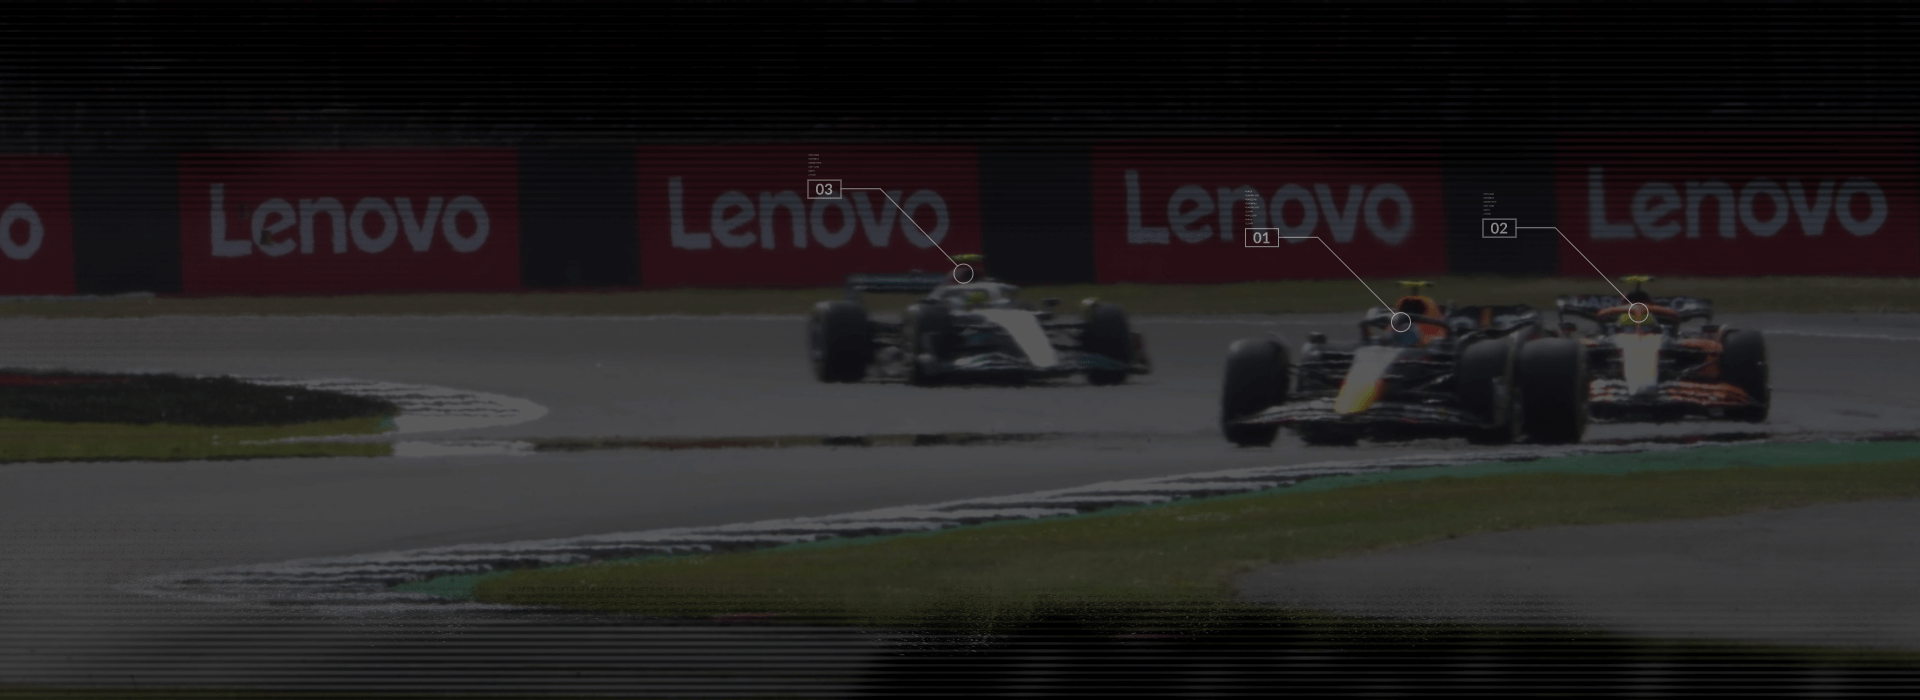 3 voitures F1 sur une piste de course avec bannières Lenovo en arrière-plan